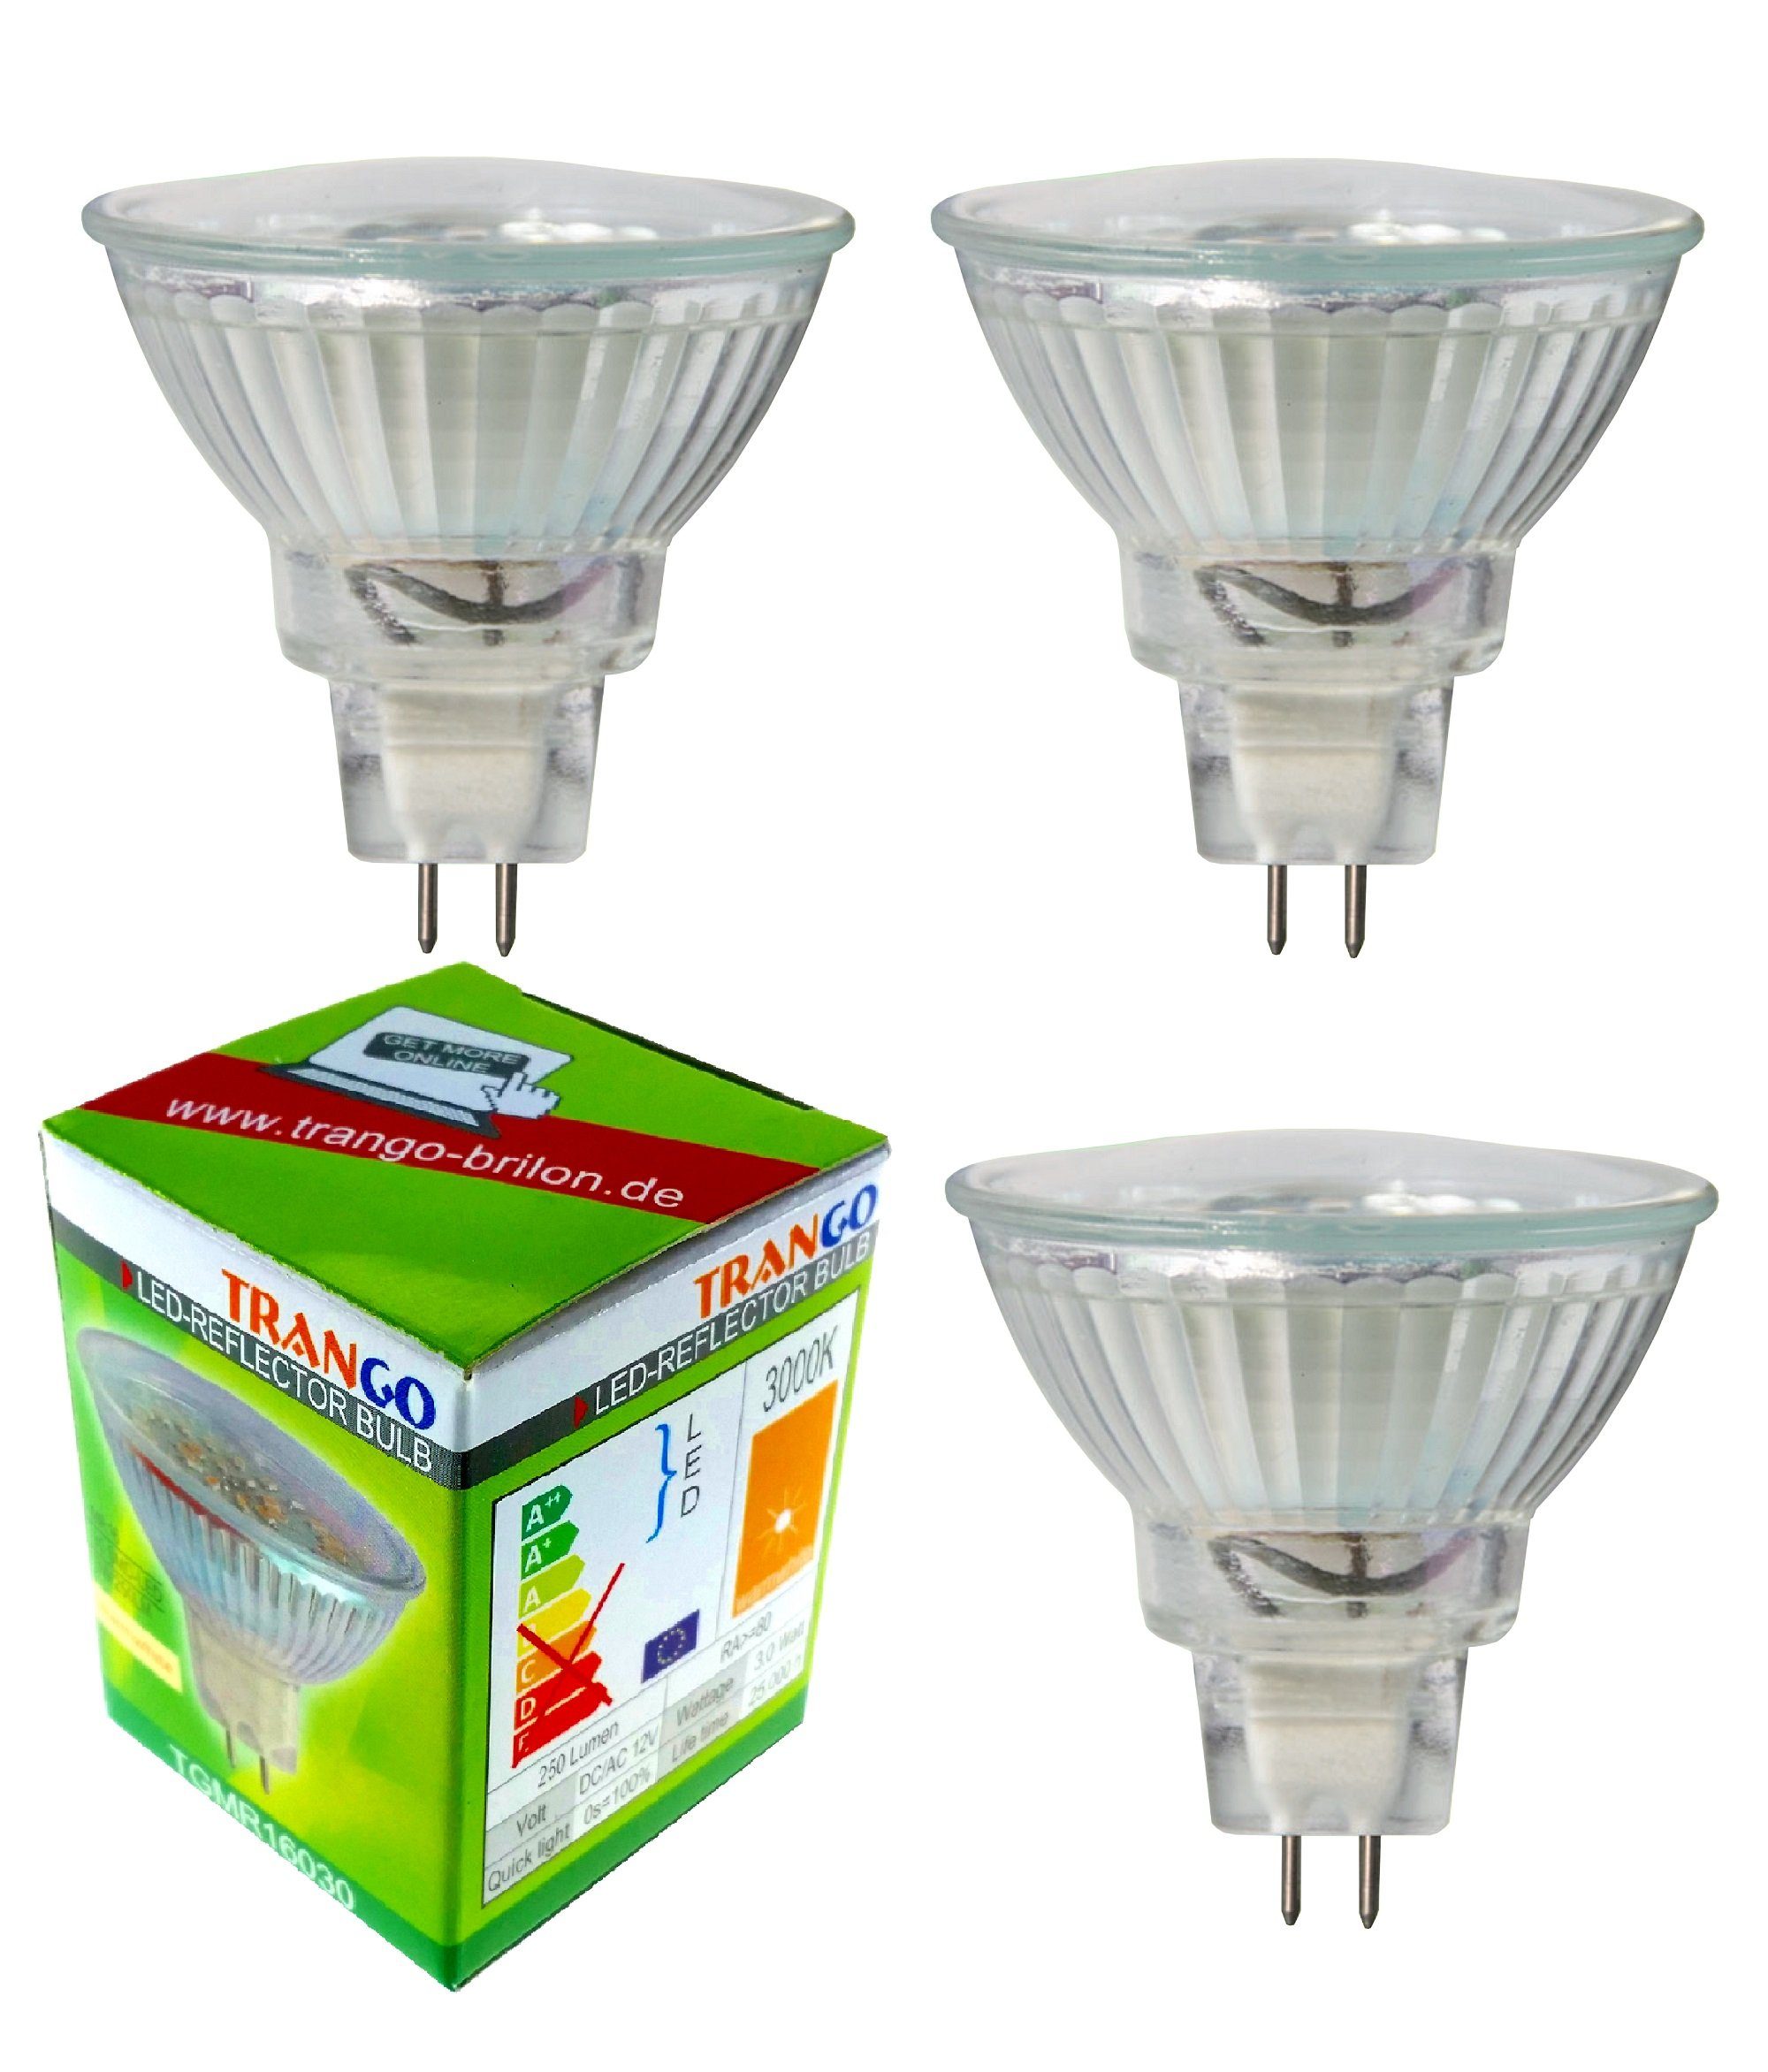 TRANGO LED-Leuchtmittel, GU 5,3, MR16, 3 St., 3er Set MR16030 LED  Leuchtmittel mit MR16 Fassung zum Austausch herkömmlicher Halogen  Leuchtmittel MR16 I GU5.3 I G4 12 Volt 3000K warmweiß Glühlampe, Reflektor  Lampe,